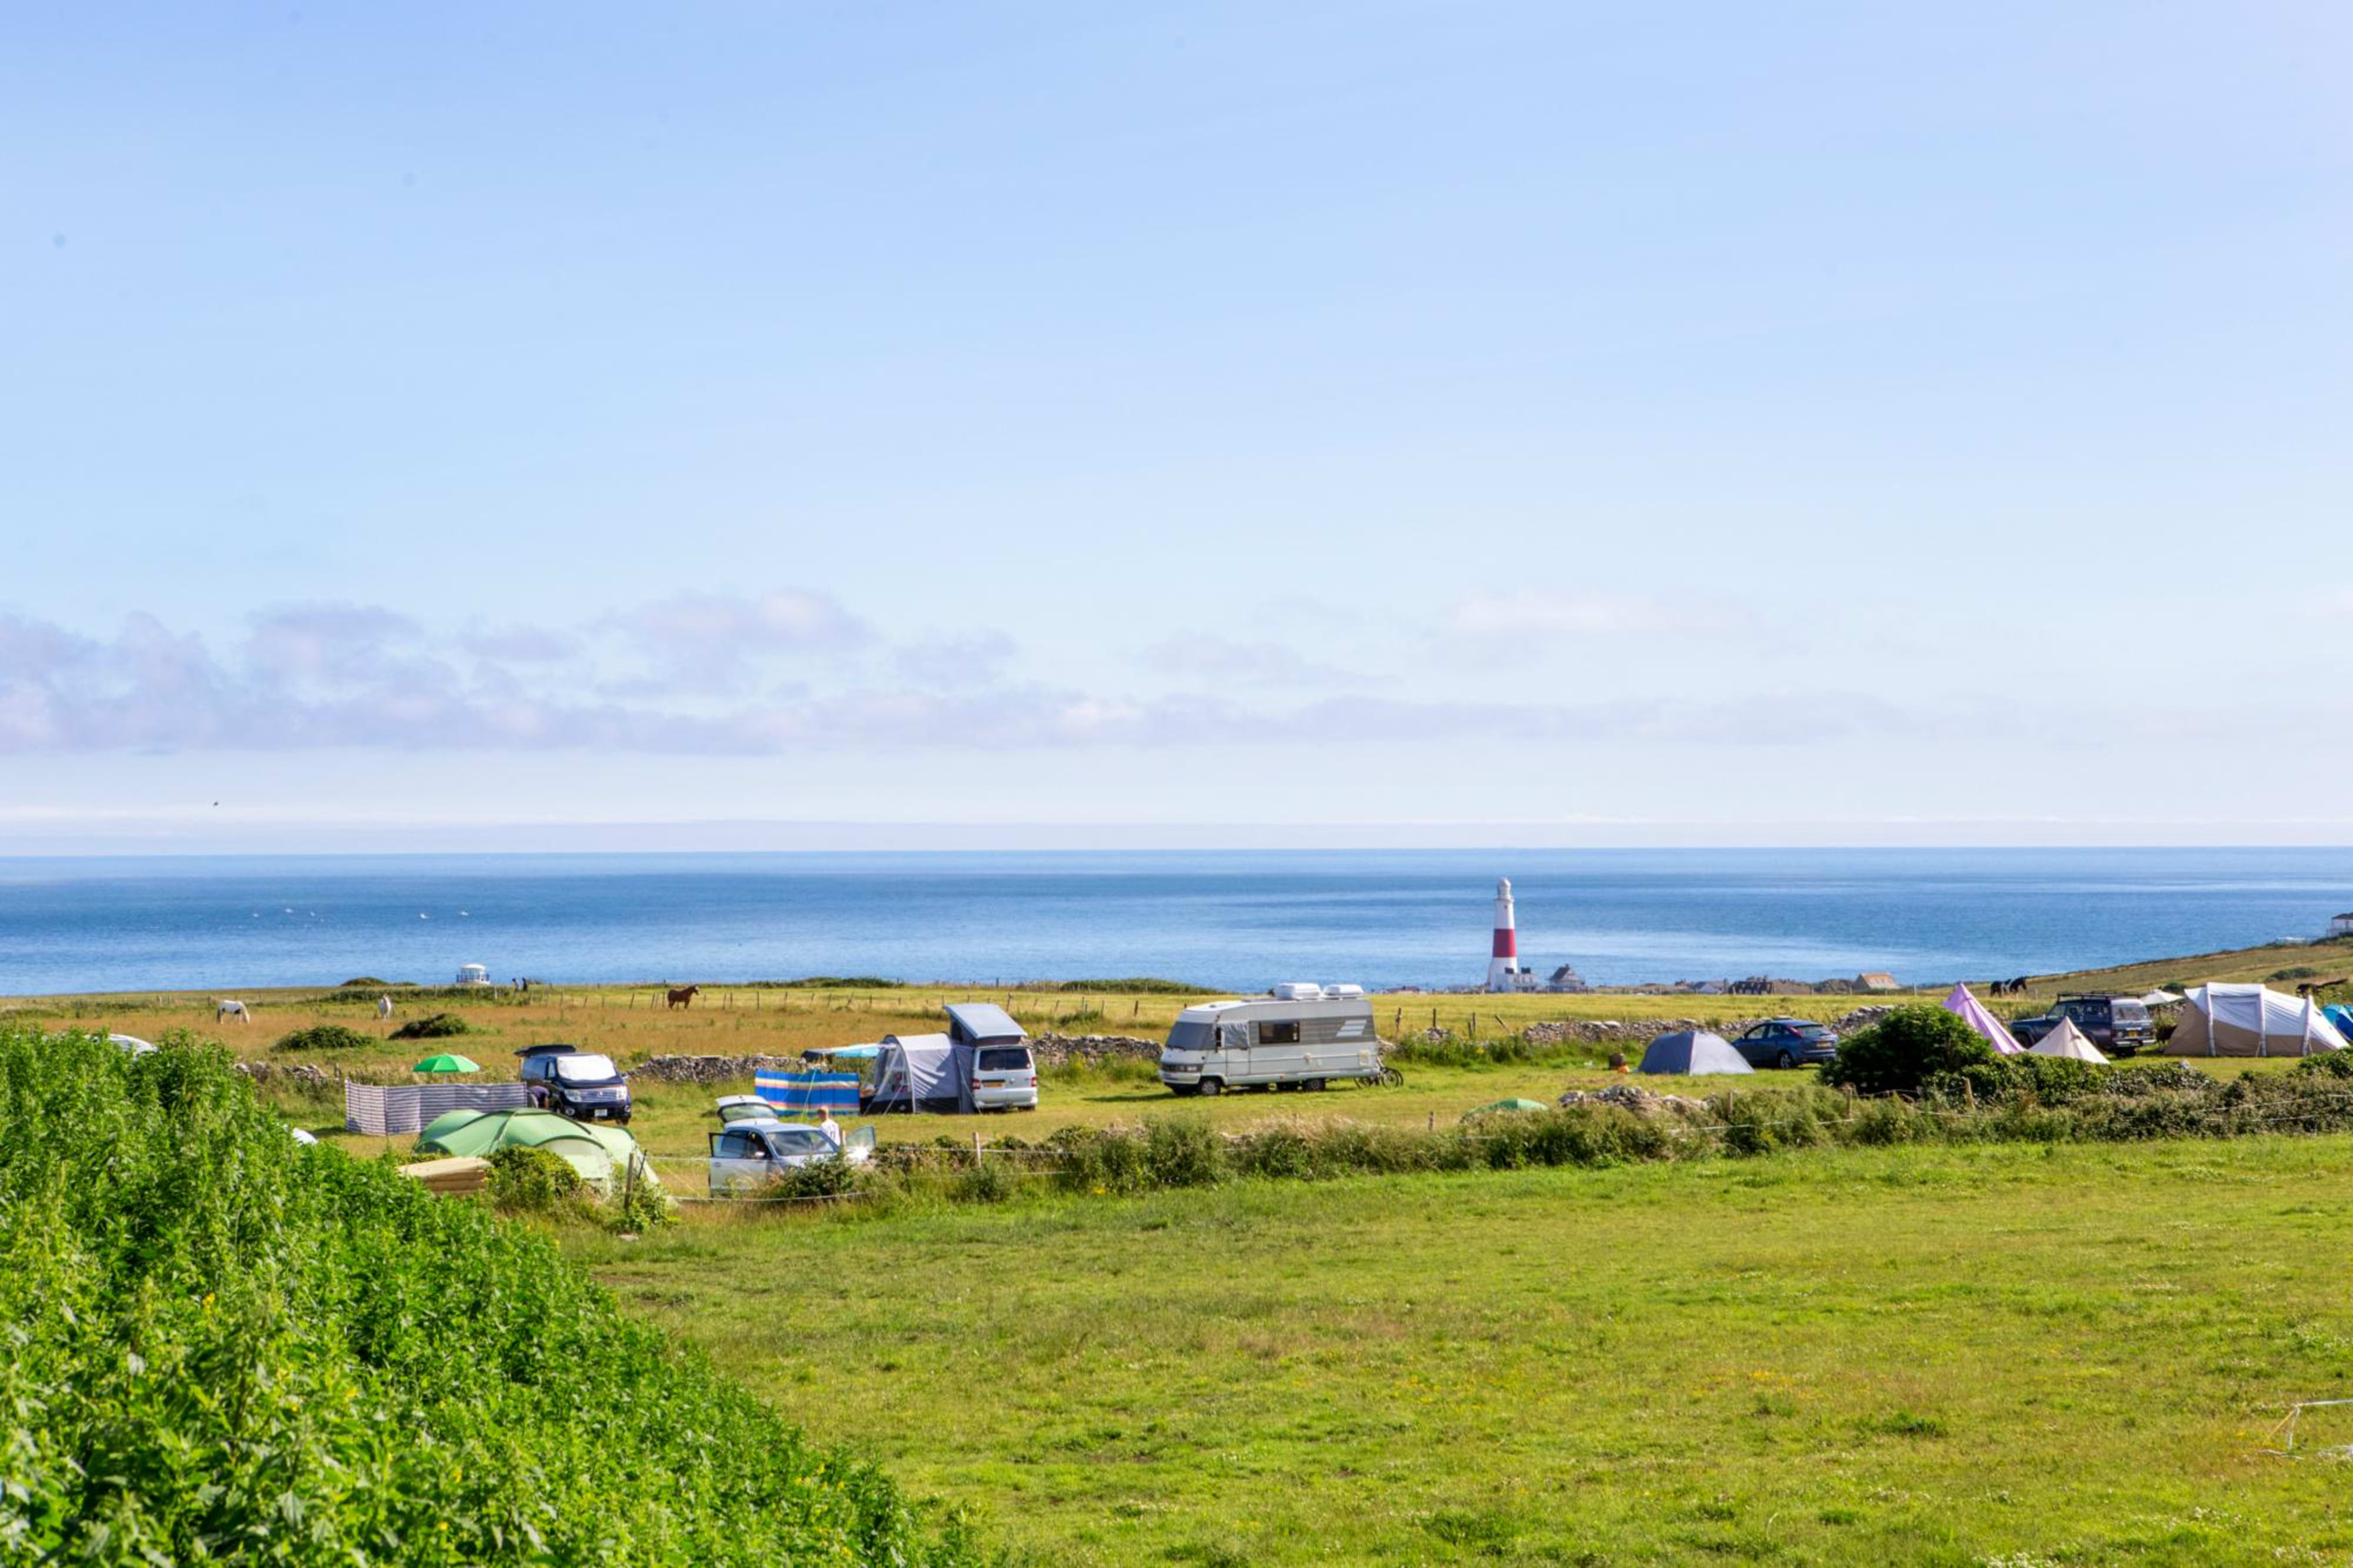 A 28-day campsite in Dorset